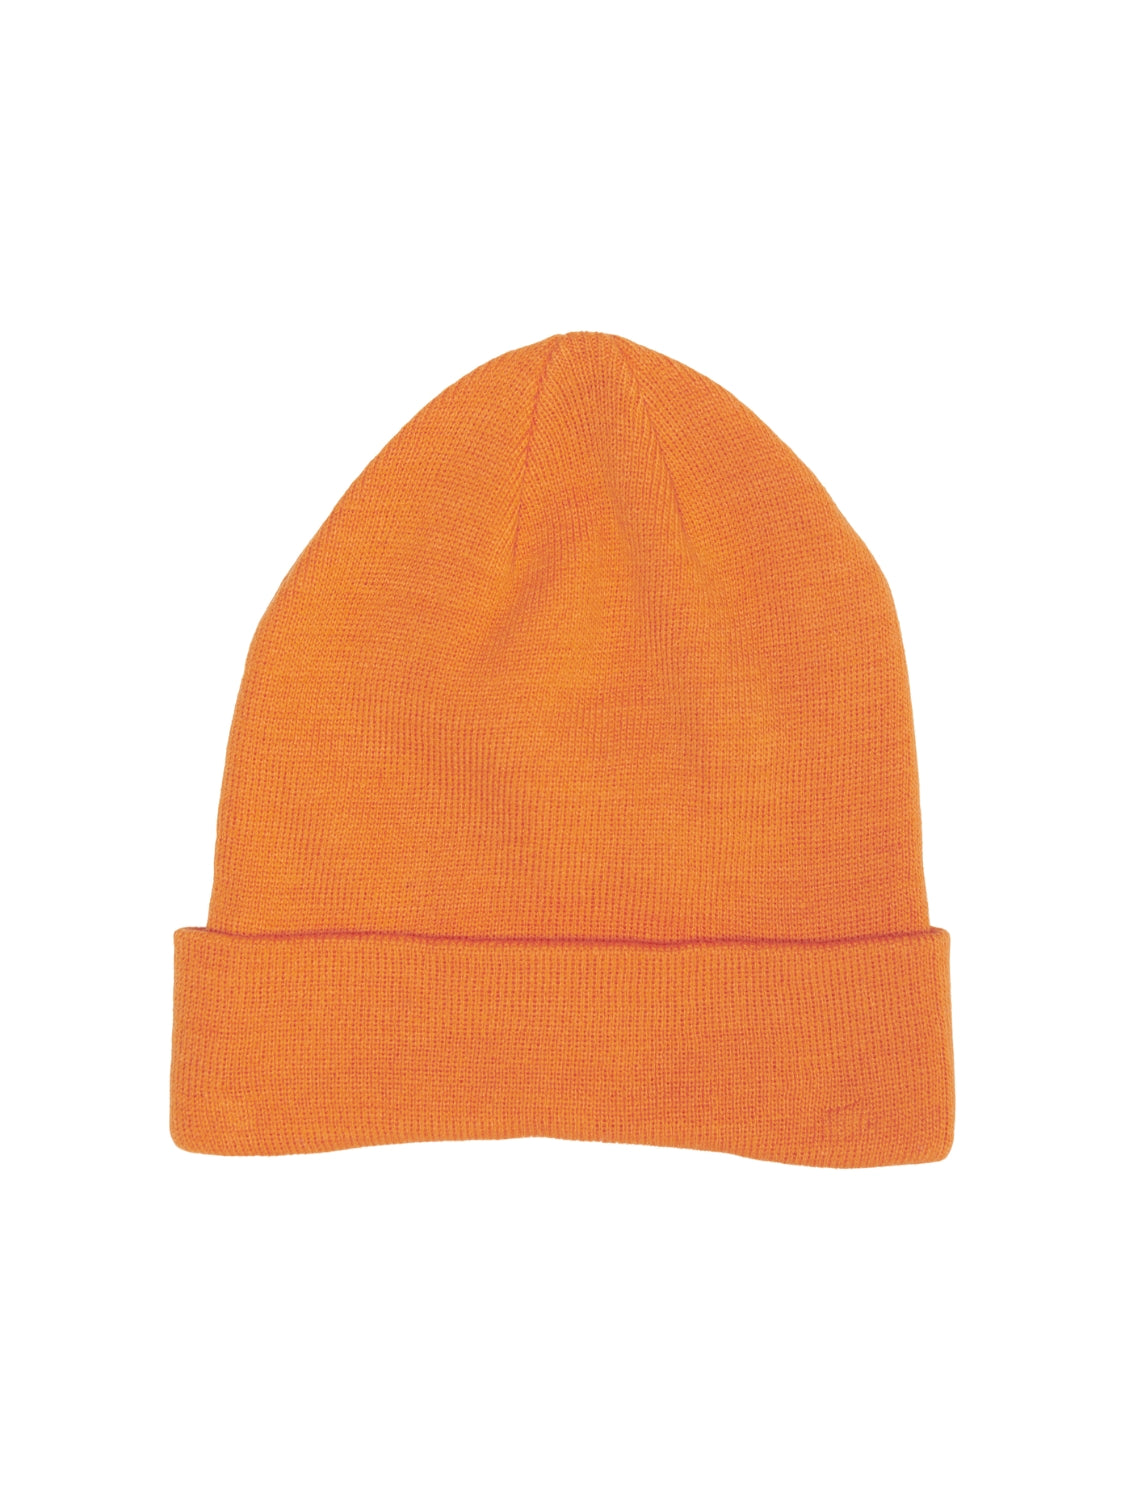 ONLLIV Headwear - Persimmon Orange